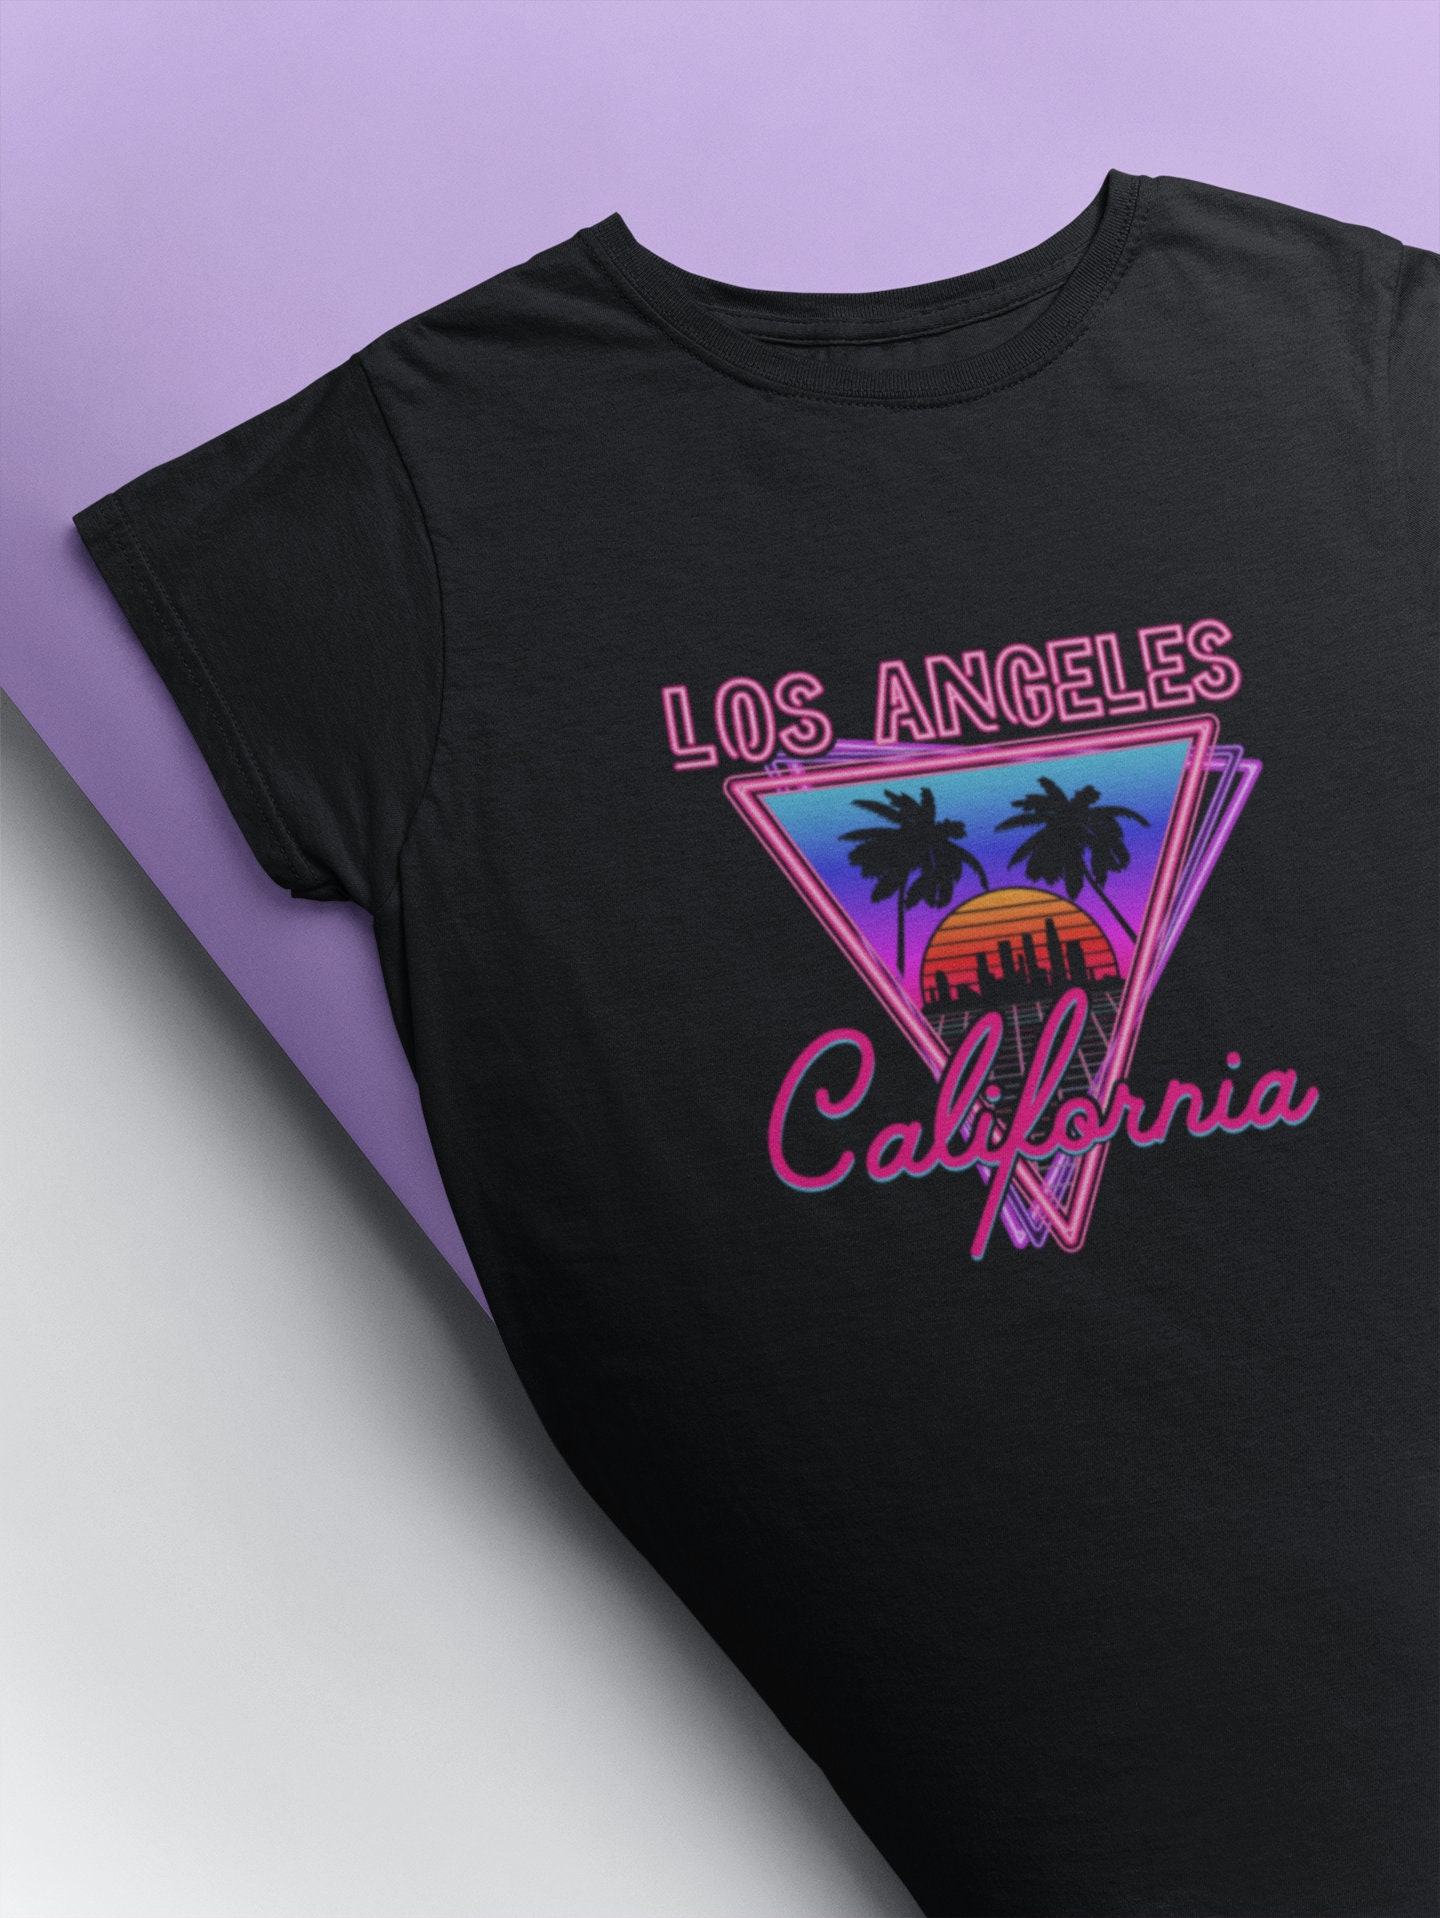 Los Angeles Vintage Shirt Retro T Shirt California Shirt | Etsy